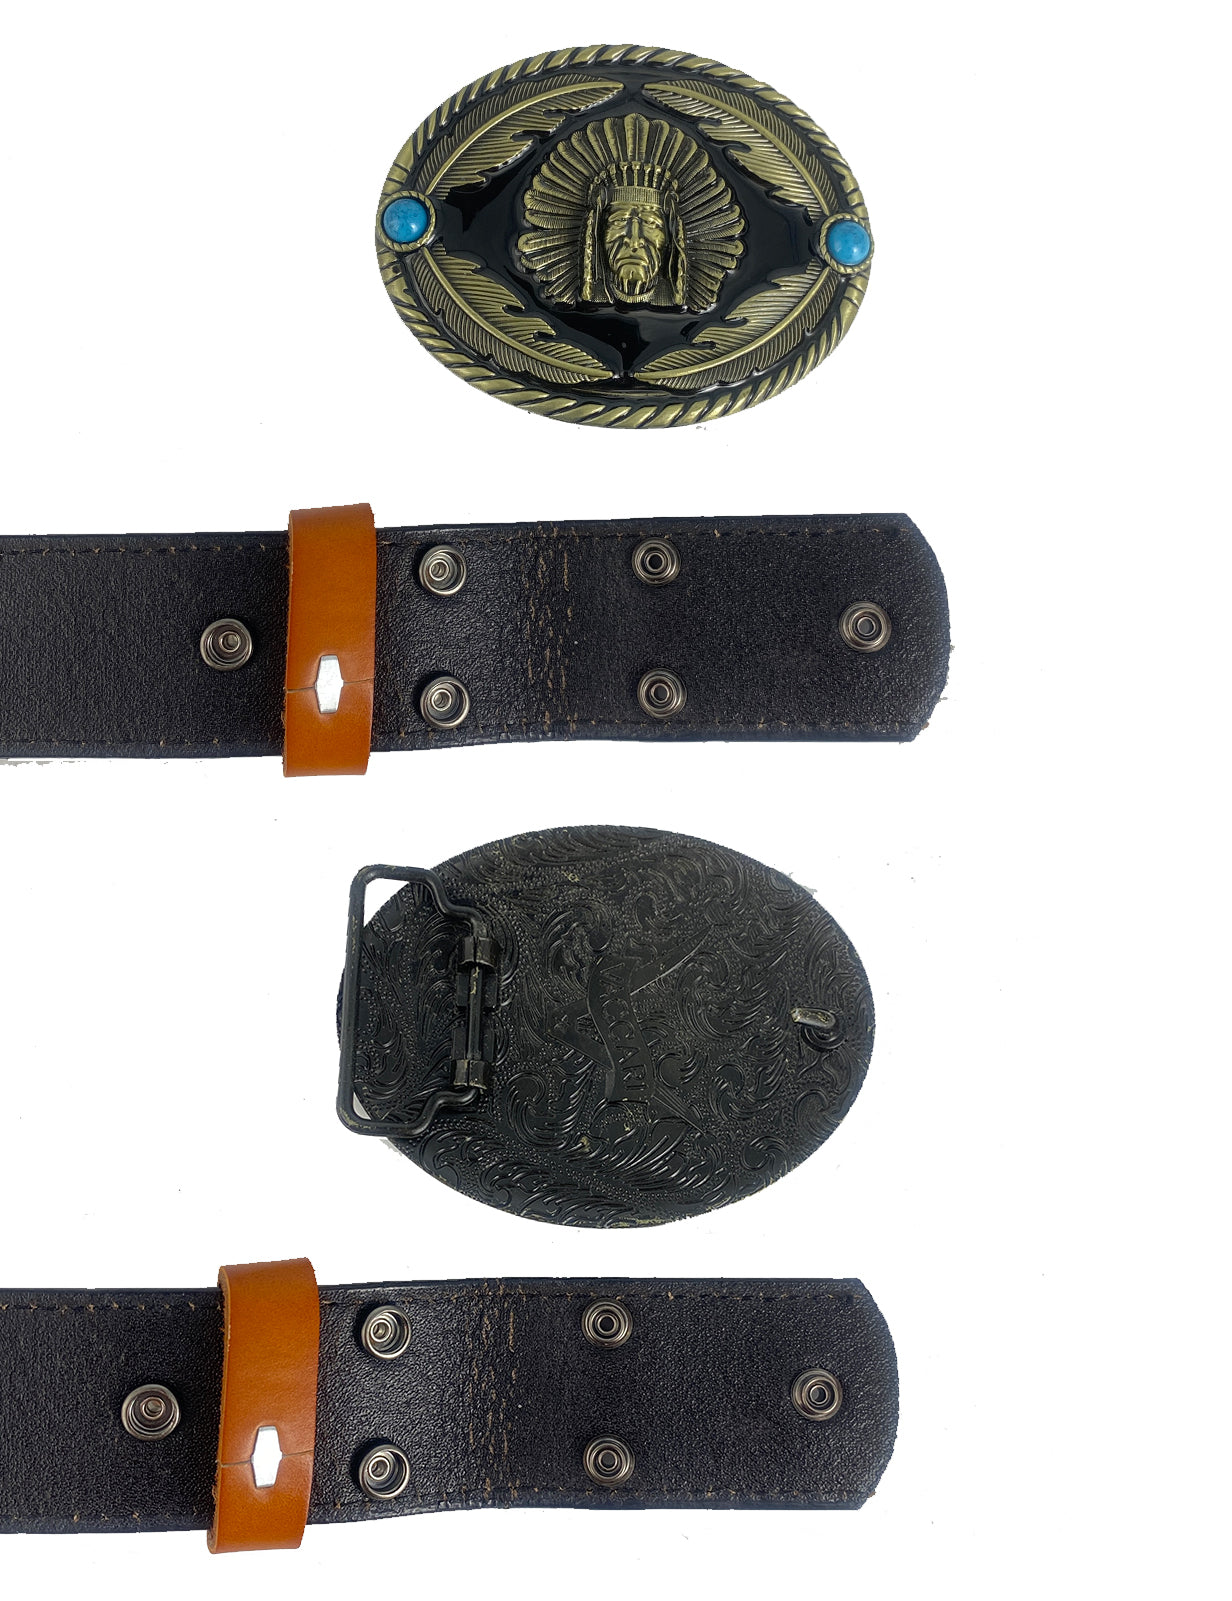 TOPACC Cinto de couro genuíno ocidental estampado com fivela de cinto de cobre/bronze indianos